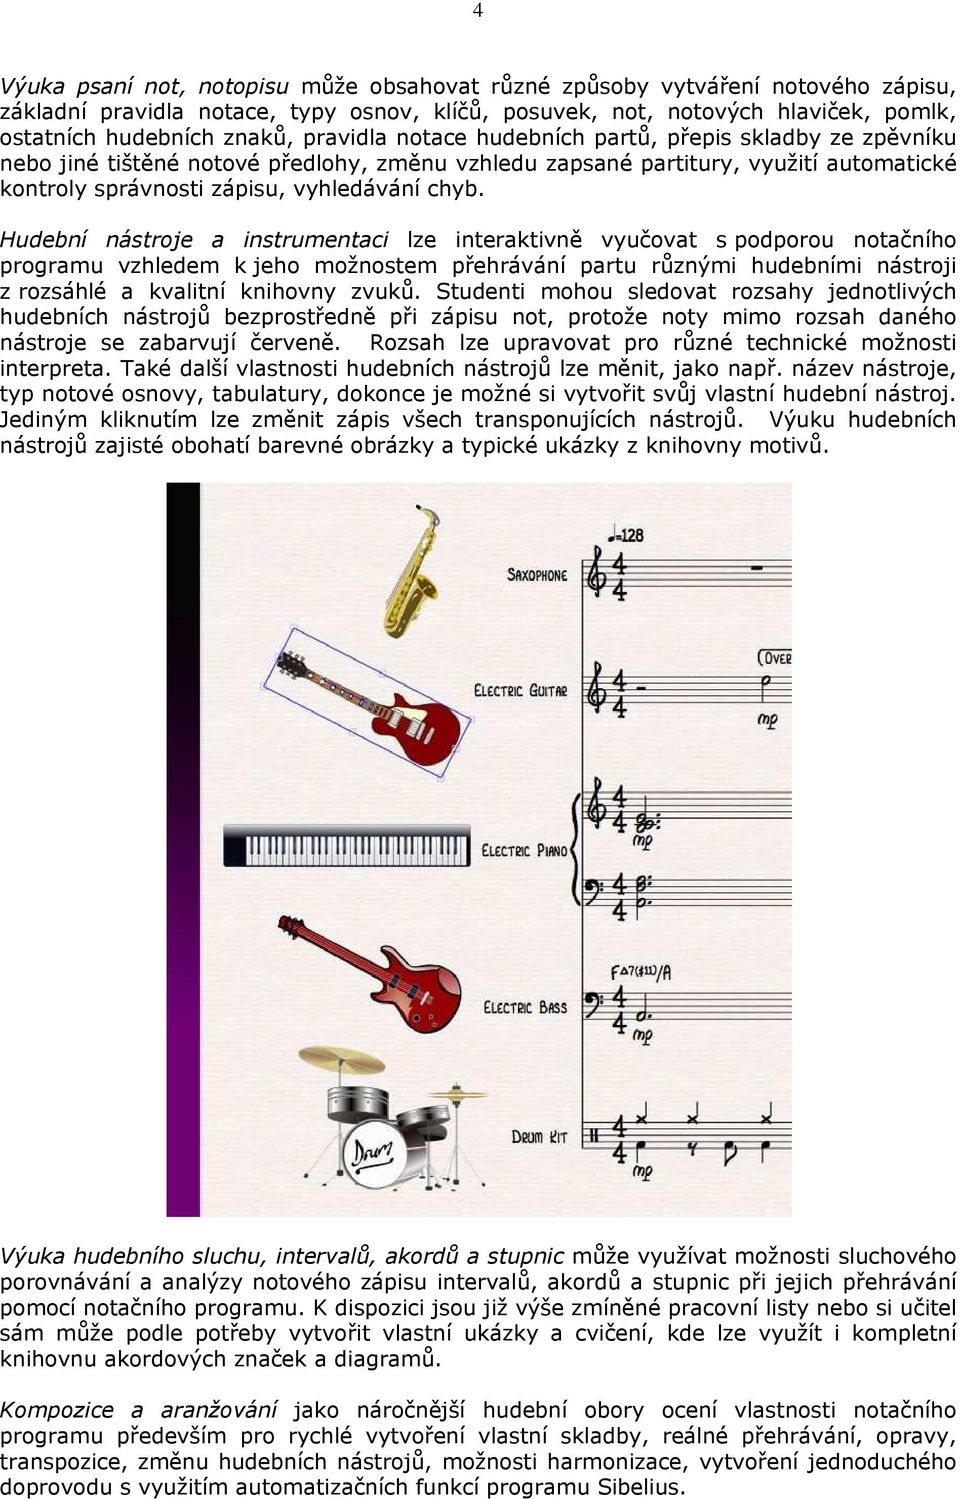 Hudební nástroje a instrumentaci lze interaktivně vyučovat s podporou notačního programu vzhledem k jeho možnostem přehrávání partu různými hudebními nástroji z rozsáhlé a kvalitní knihovny zvuků.